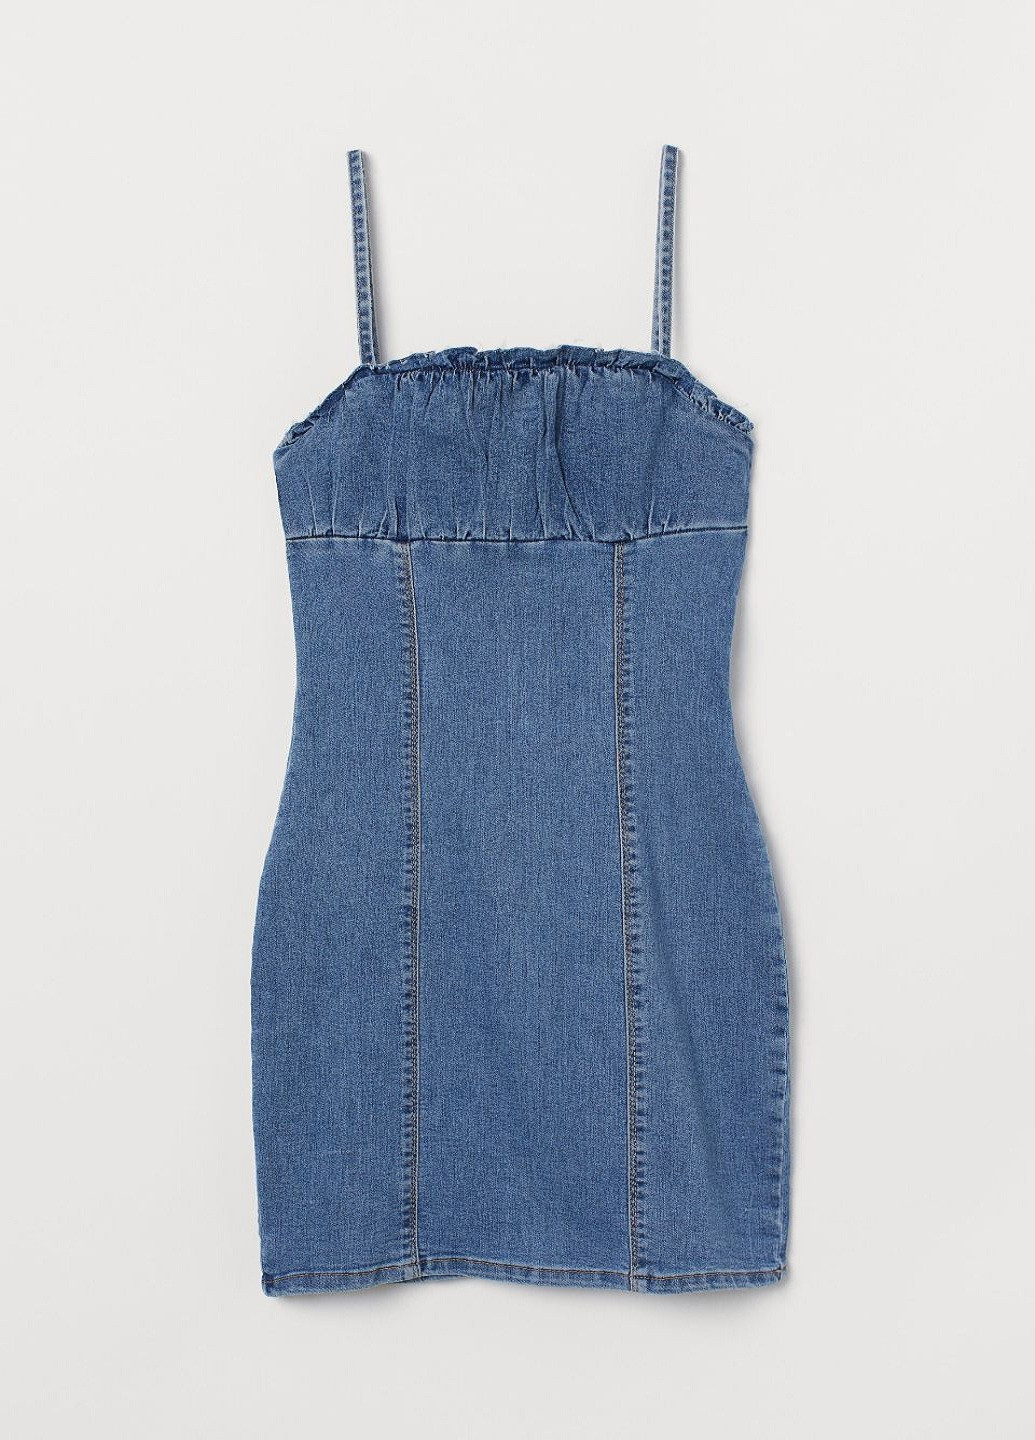 Синя джинсова плаття, сукня H&M однотонна